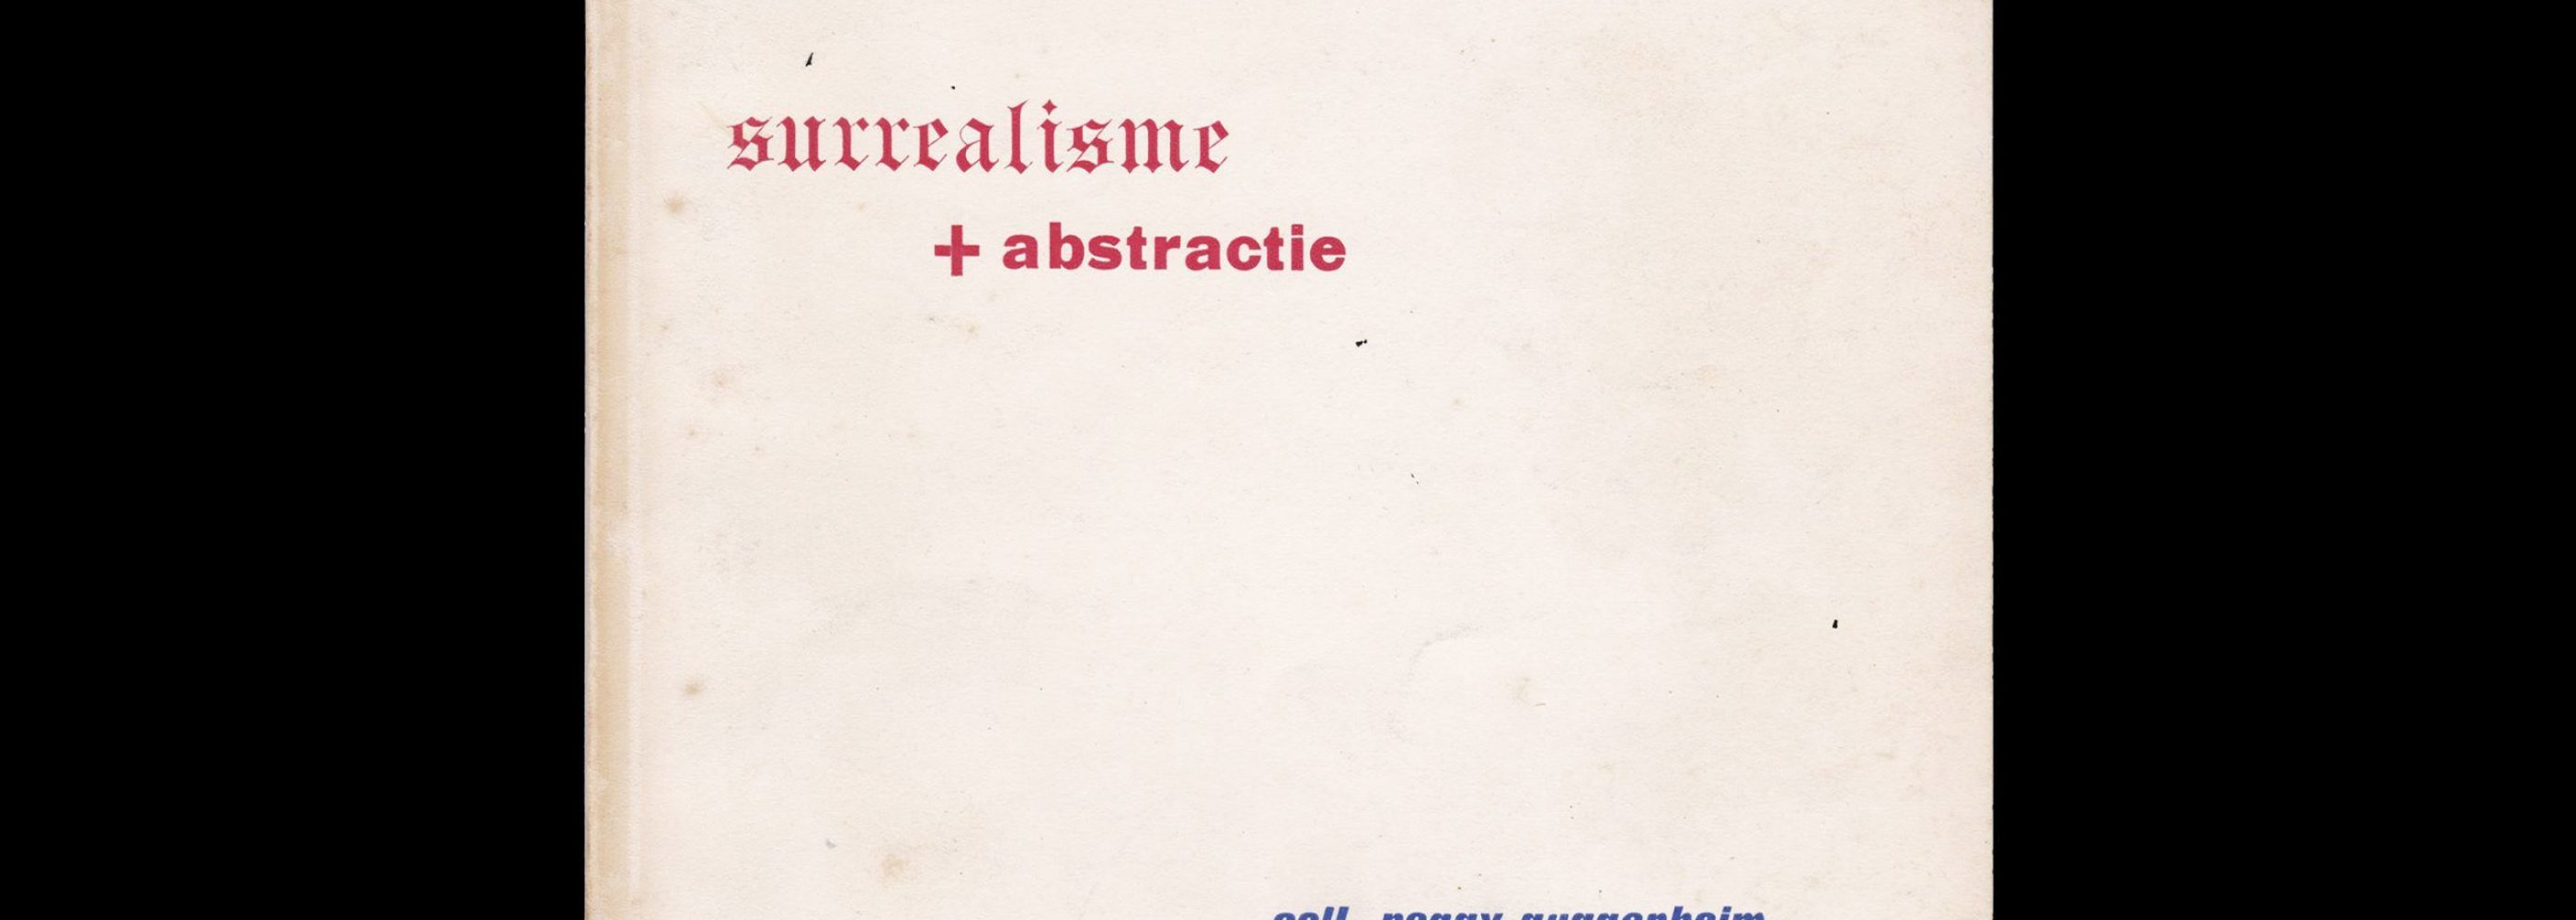 Surréalisme + abstraction, Stedelijk Museum Amsterdam, 1951